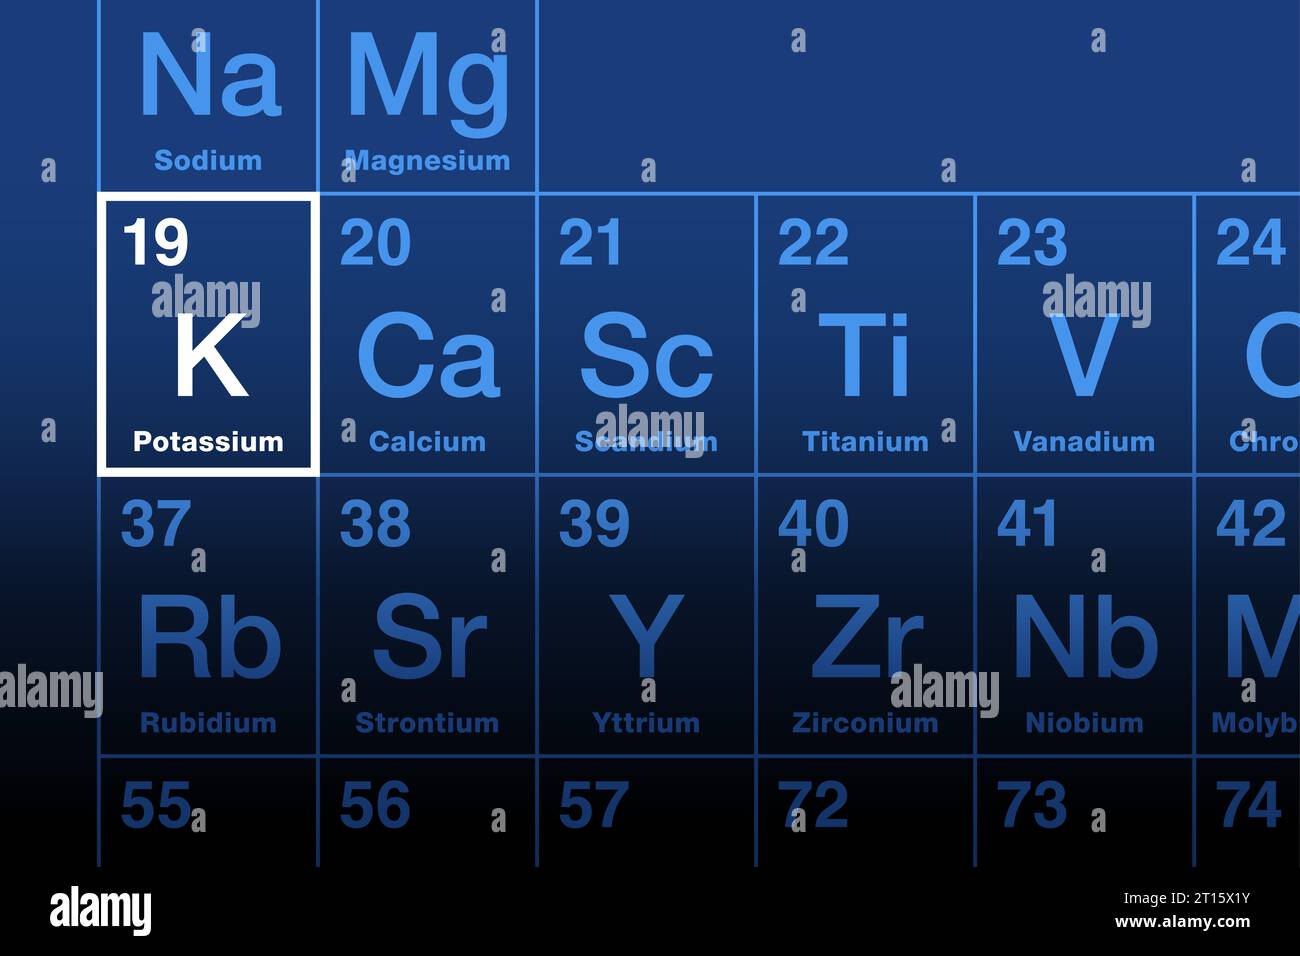 Elemento di potassio sulla tavola periodica. Metallo alcalino con il simbolo dell'elemento K dal kalium e con il numero atomico 19. Essenziale per tutte le cellule viventi. Foto Stock